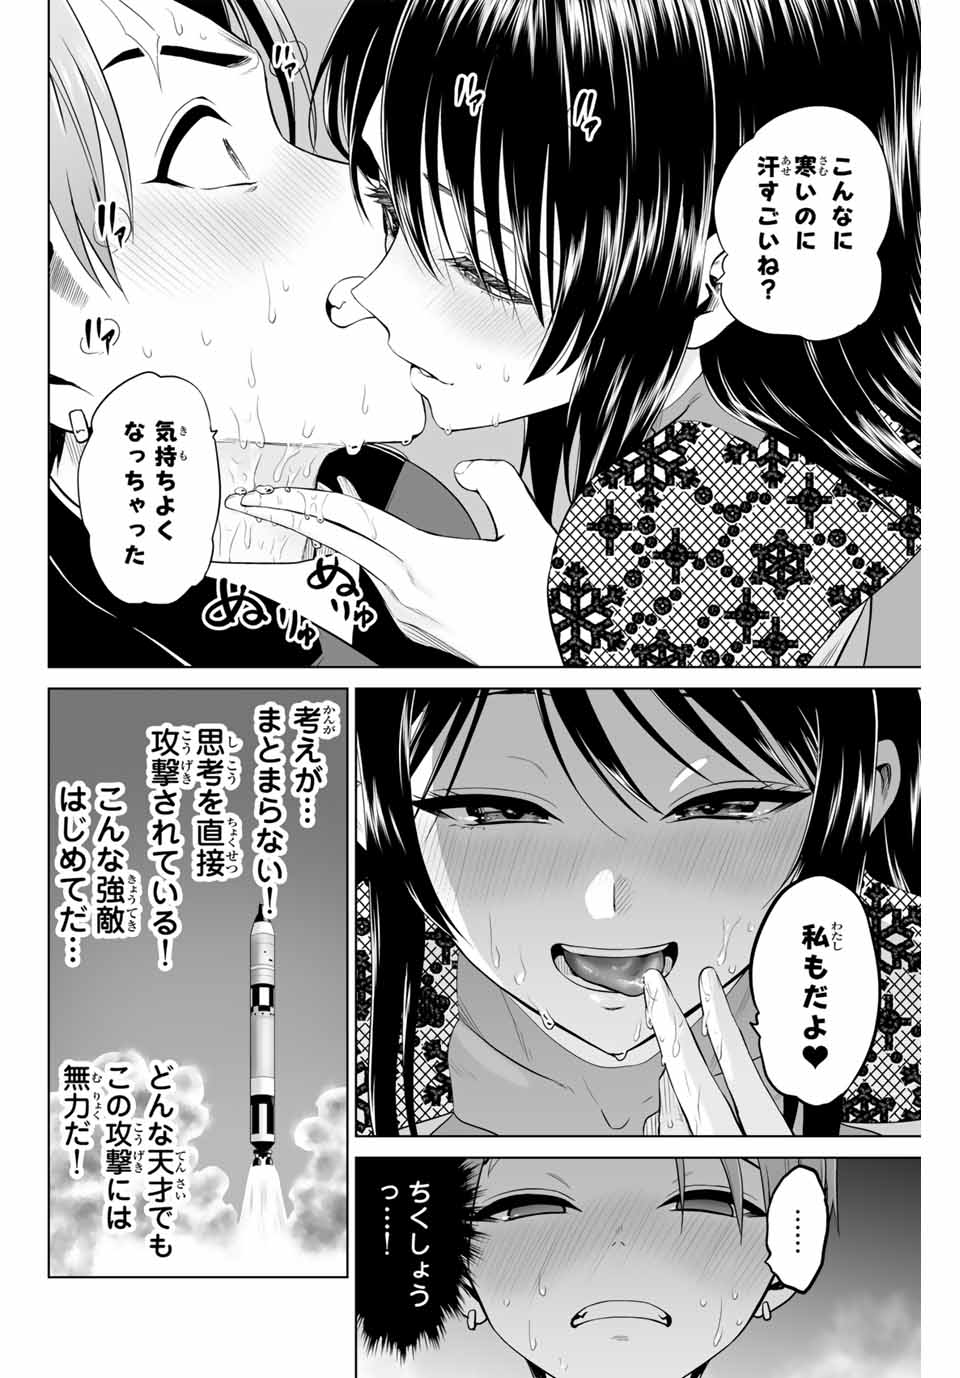 Gunshin No Takuto - Chapter 18 - Page 12